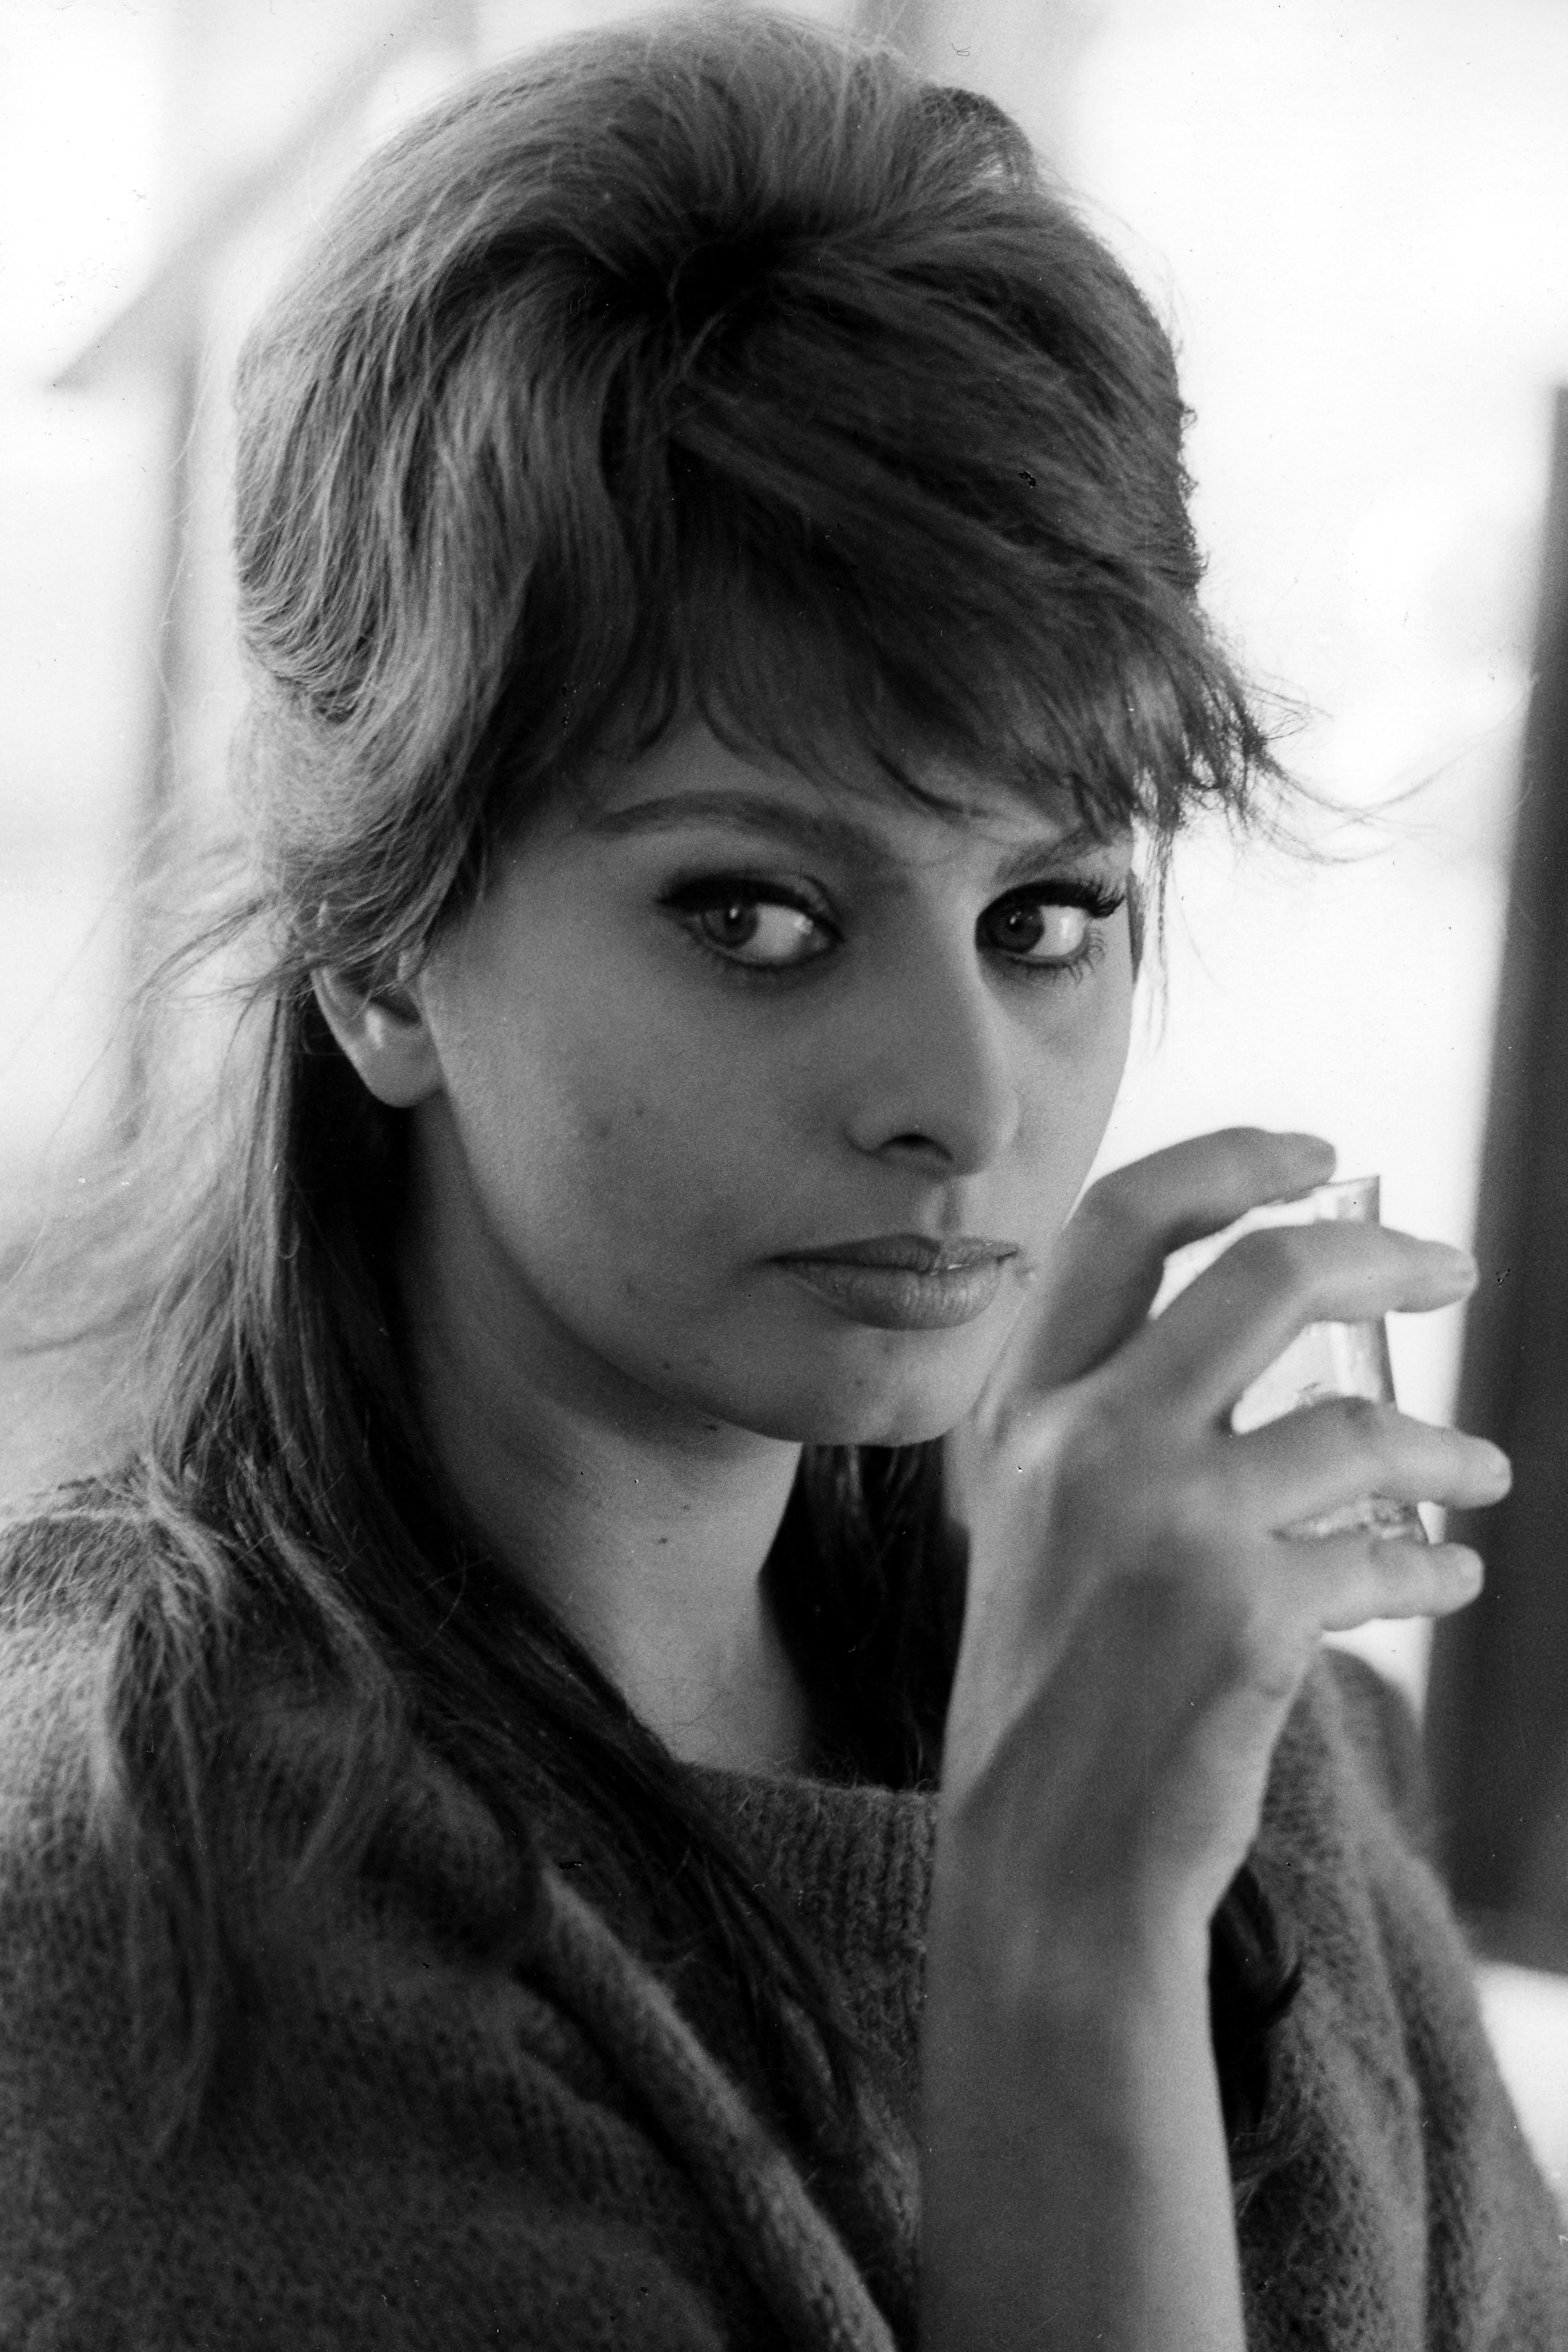 Sophia Loren in a black and white portrait in 1970. | Source: Angelo Cozzi/Archivio Angelo Cozzi/Mondadori/Getty Images